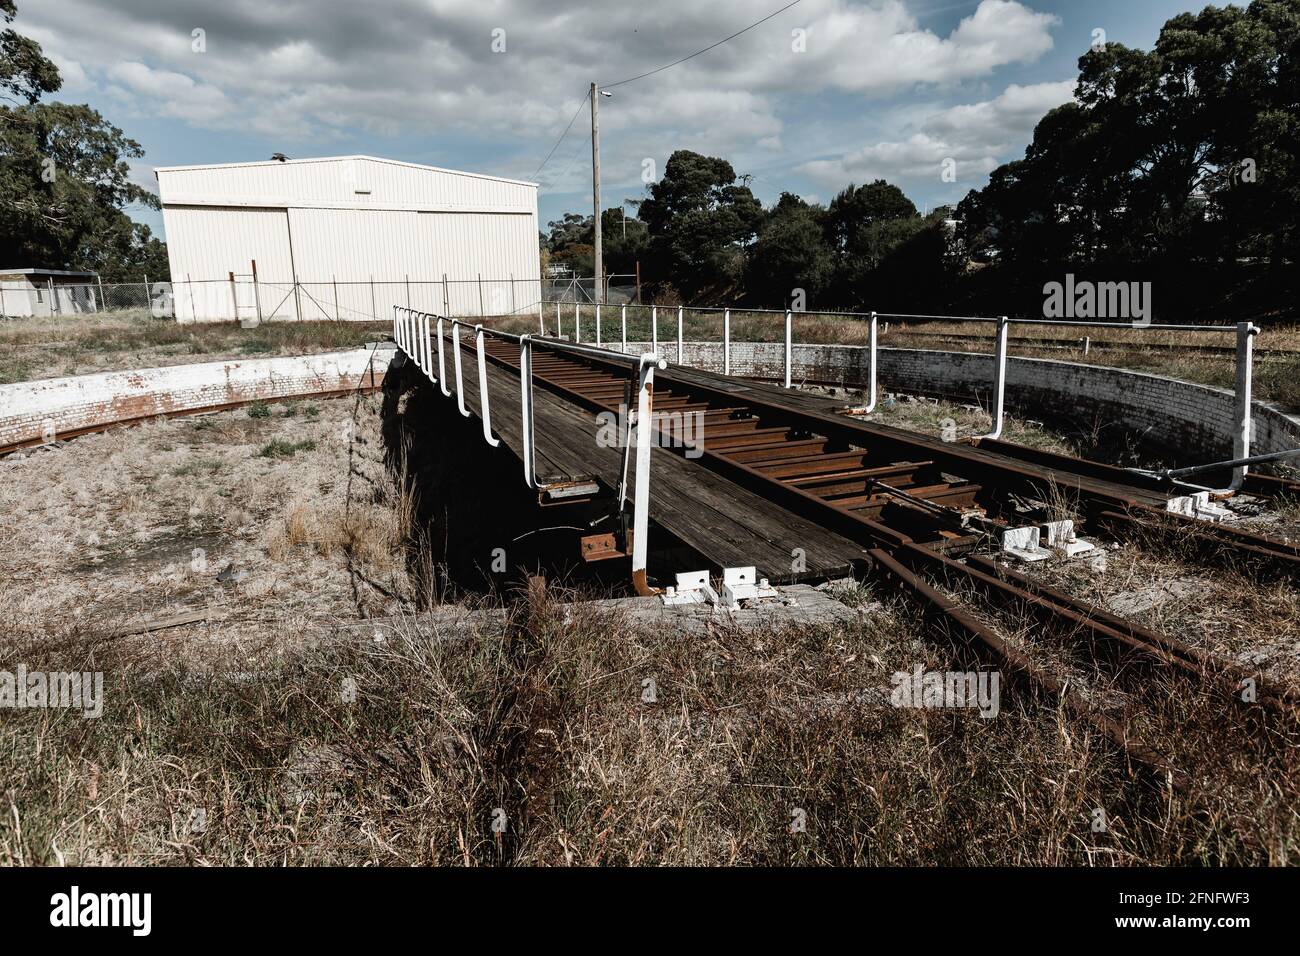 Una piattaforma girevole per treni storici utilizzava per spostare i treni su un altro binario Foto Stock